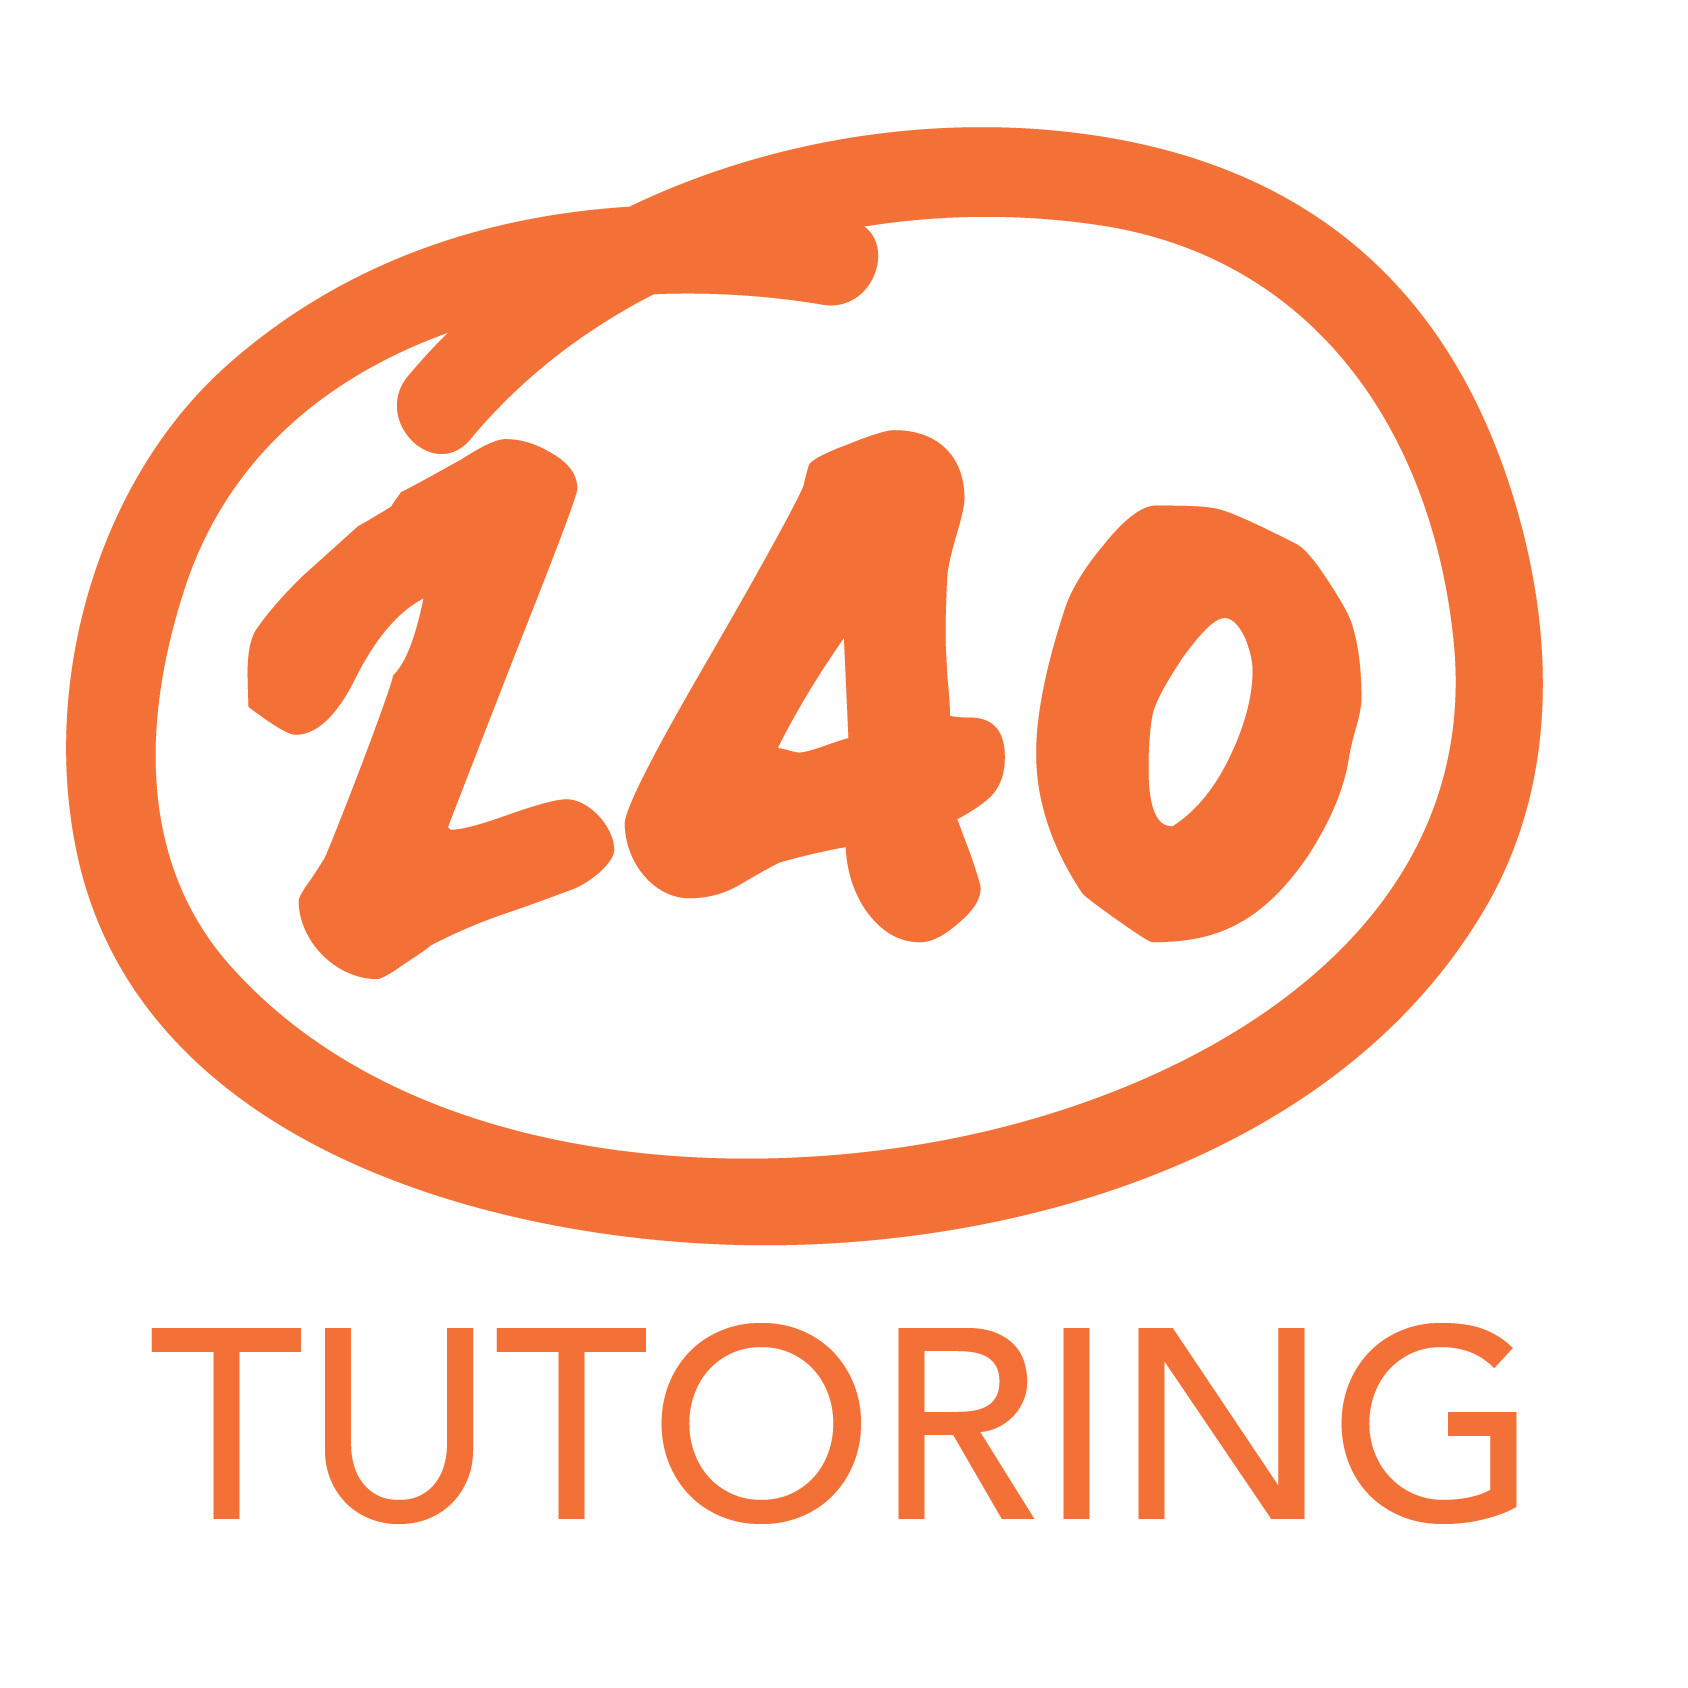 240-tutoring-logo